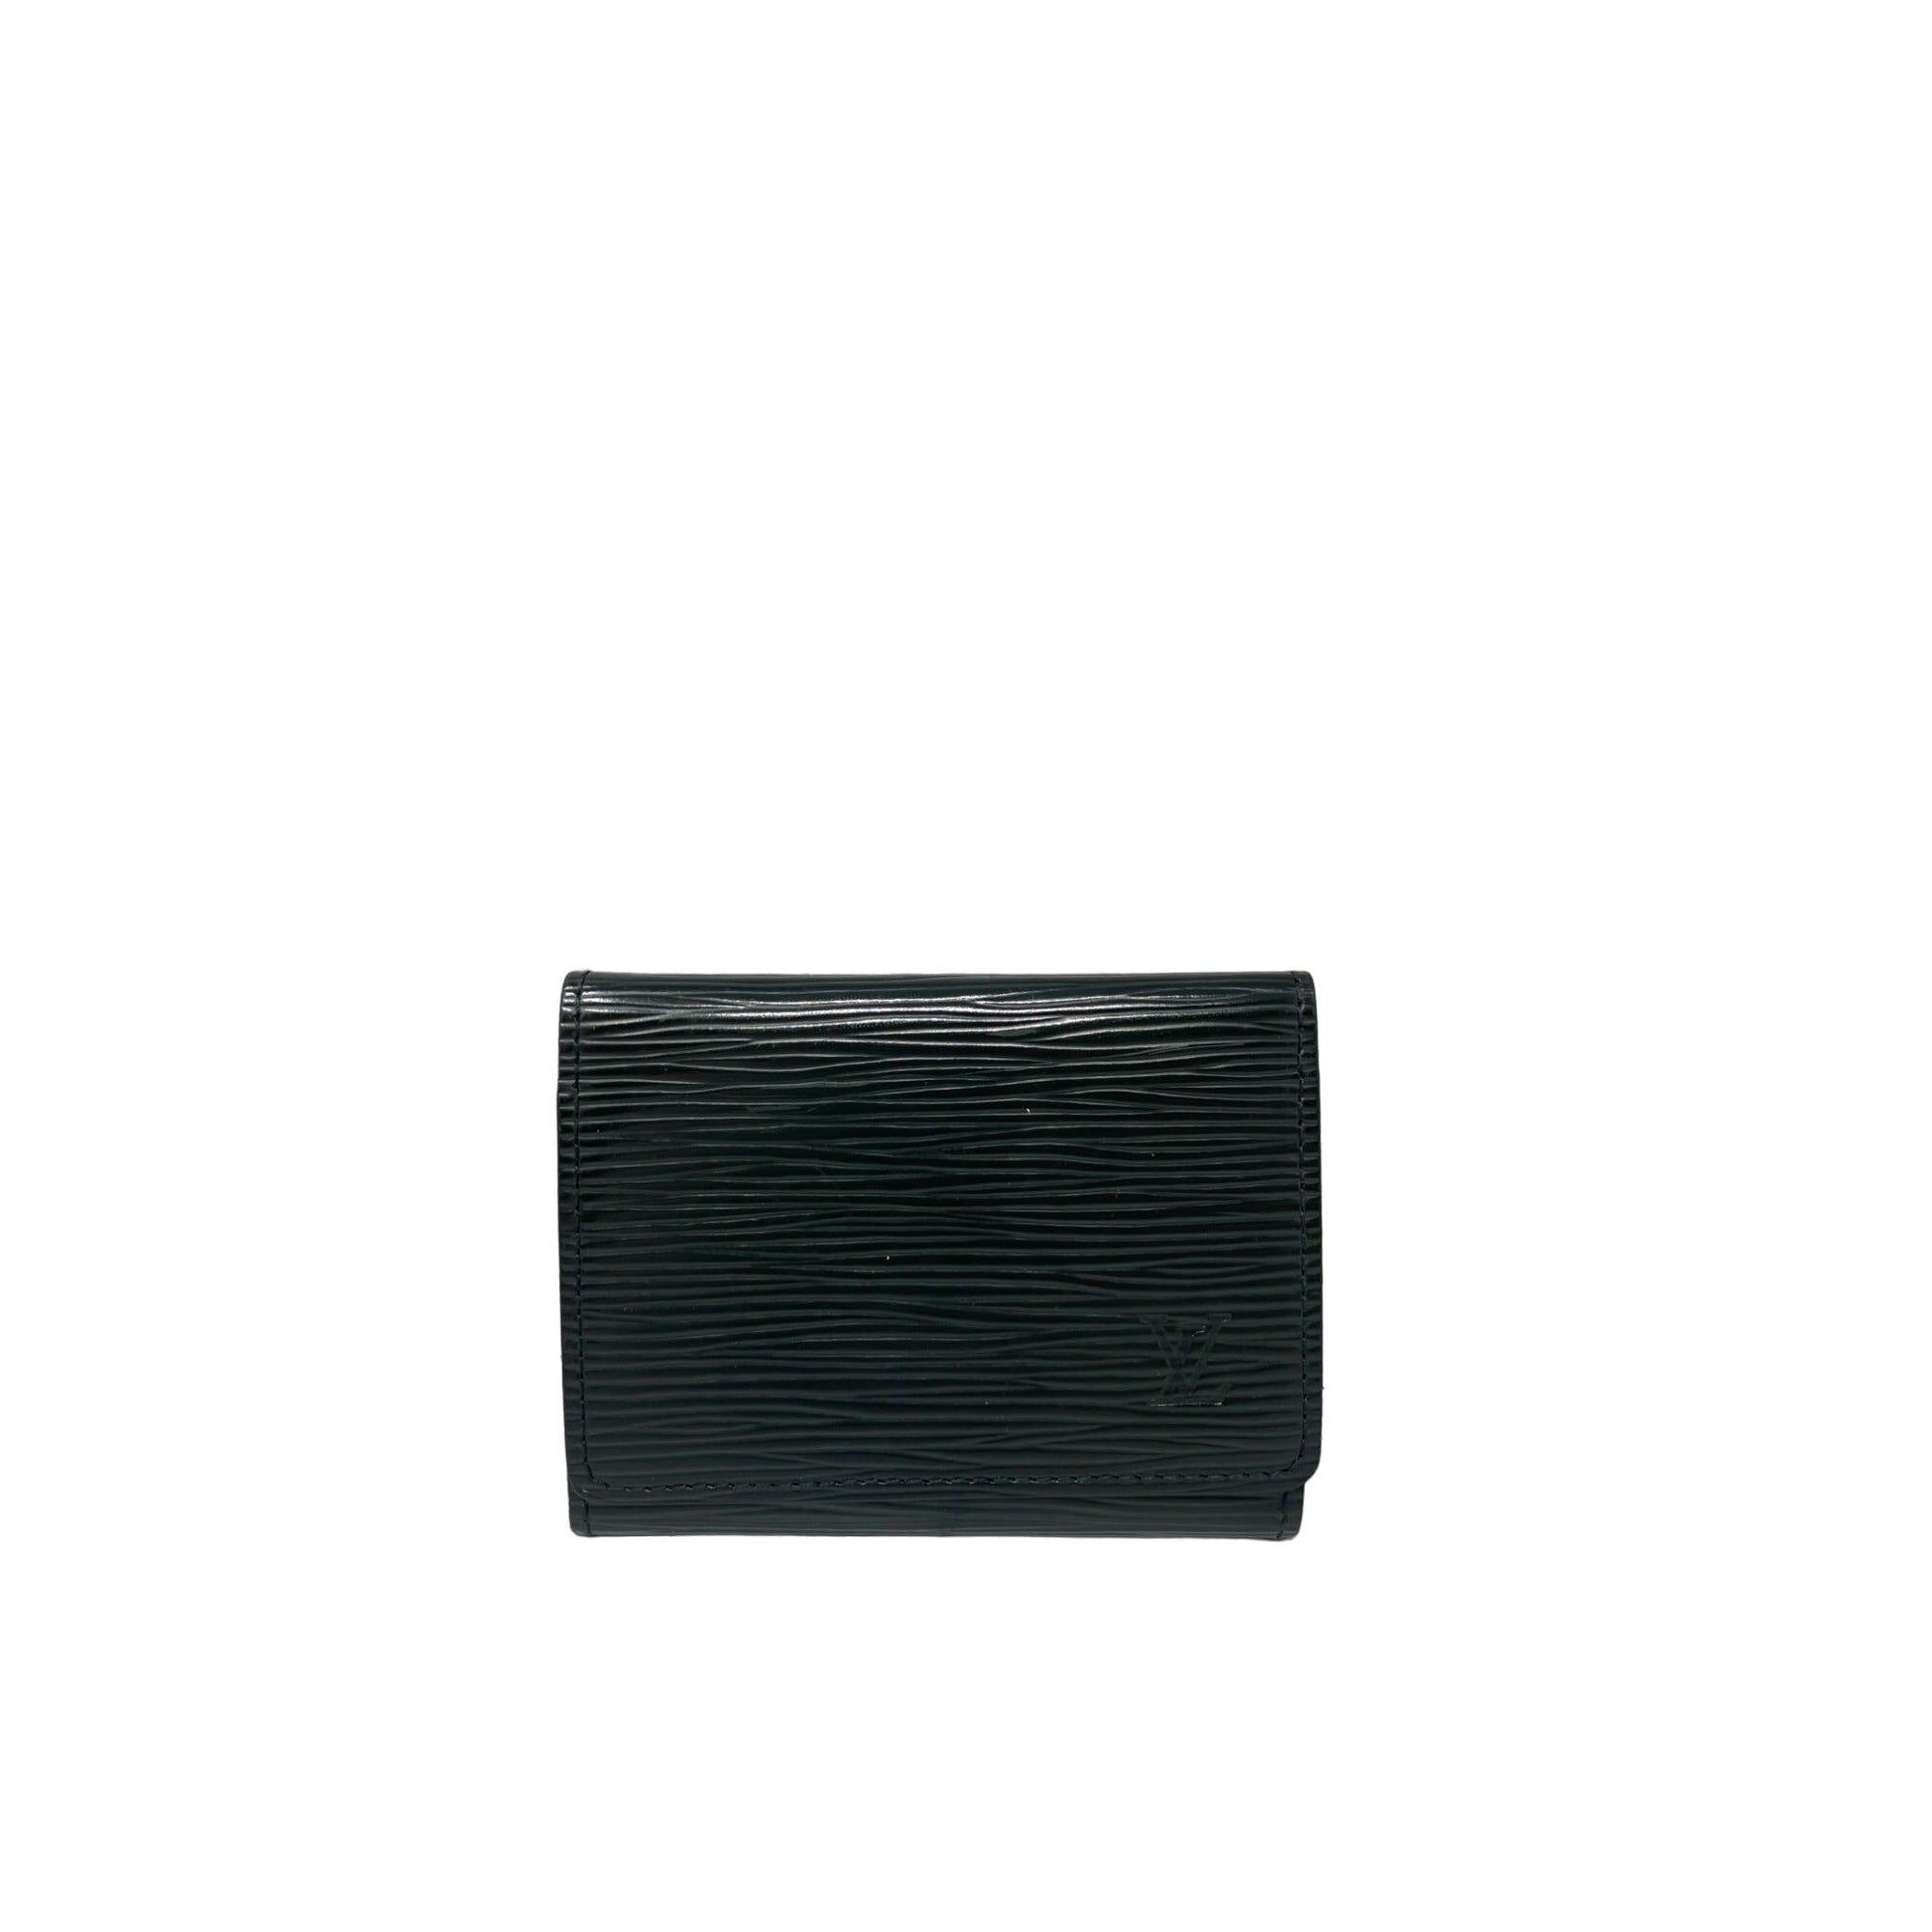 LOUIS VUITTON Louis Vuitton Epi Leather Card Case - Black